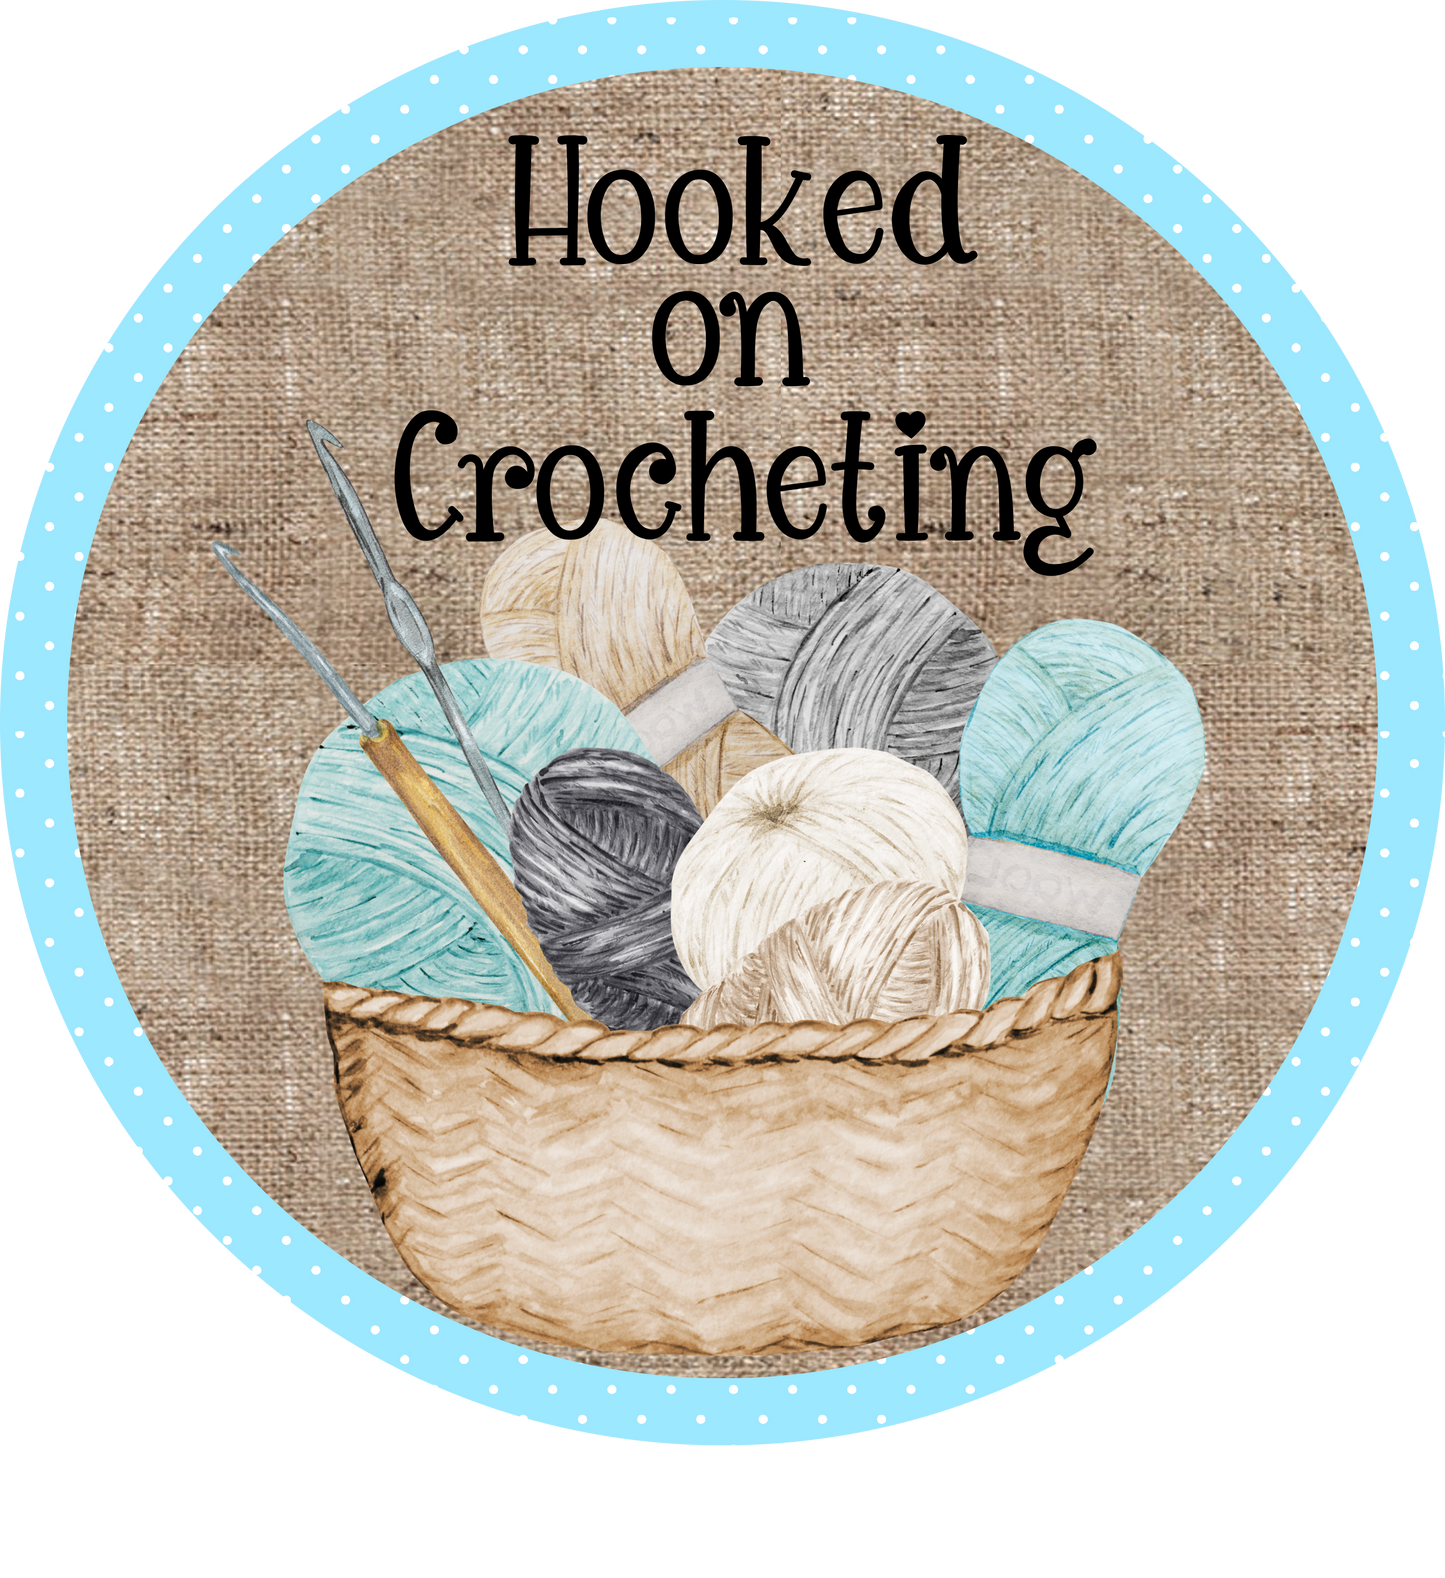 Crocheting Round